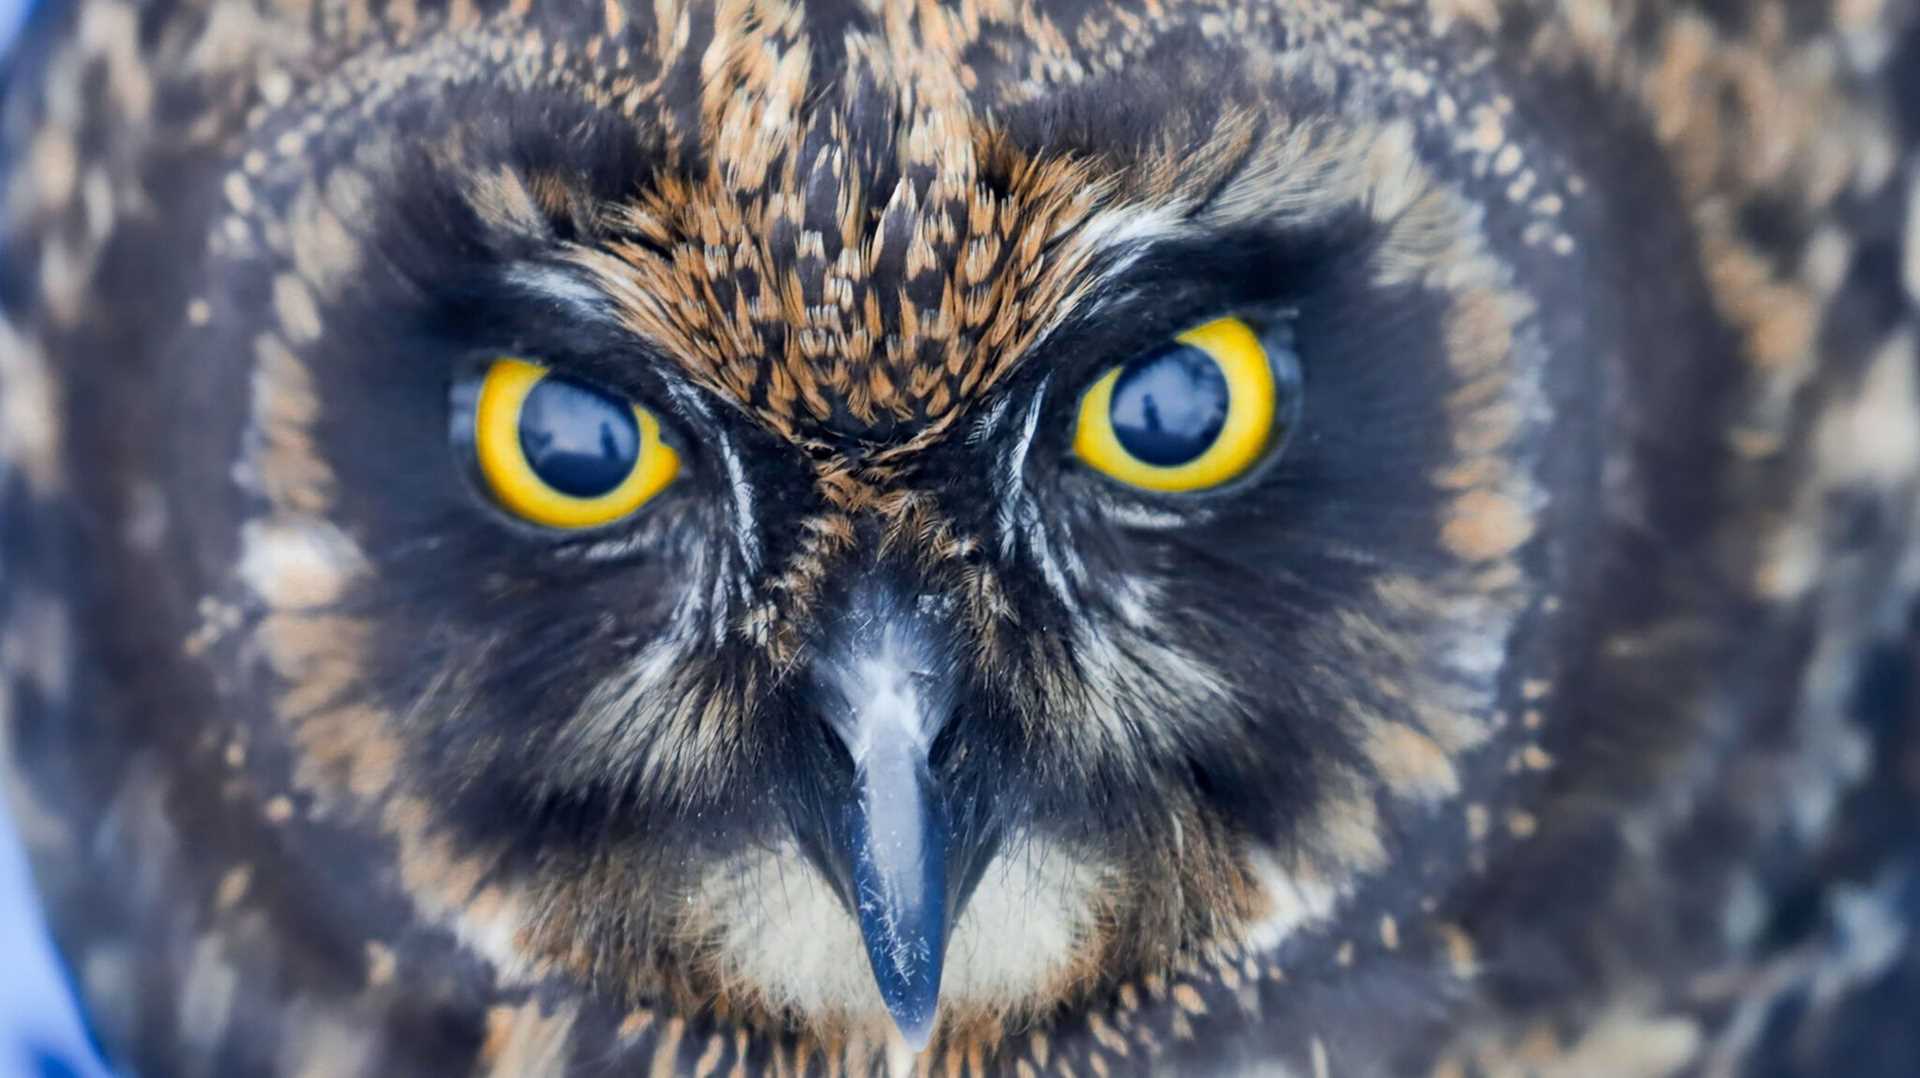 close-up of an owl face